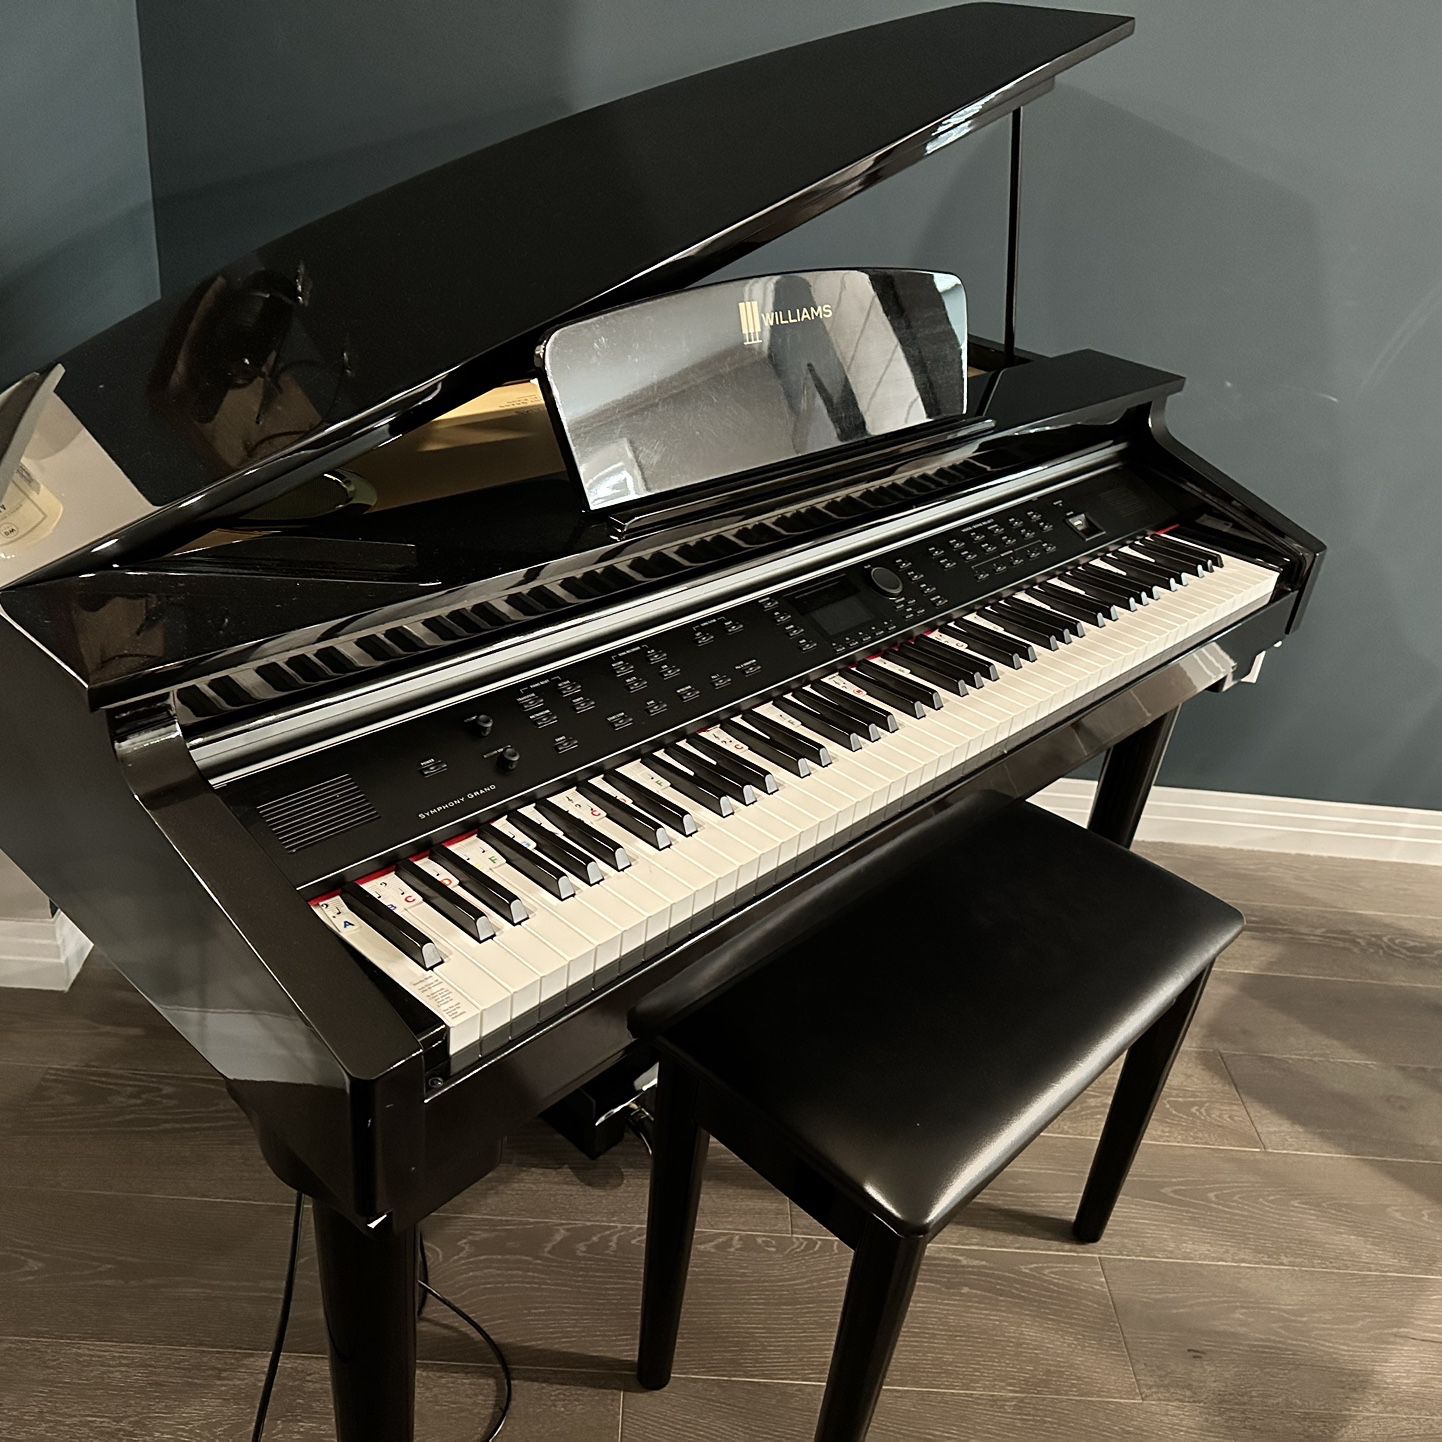 Williams Symphony Grand Digital Piano With Bench Ebony Polish